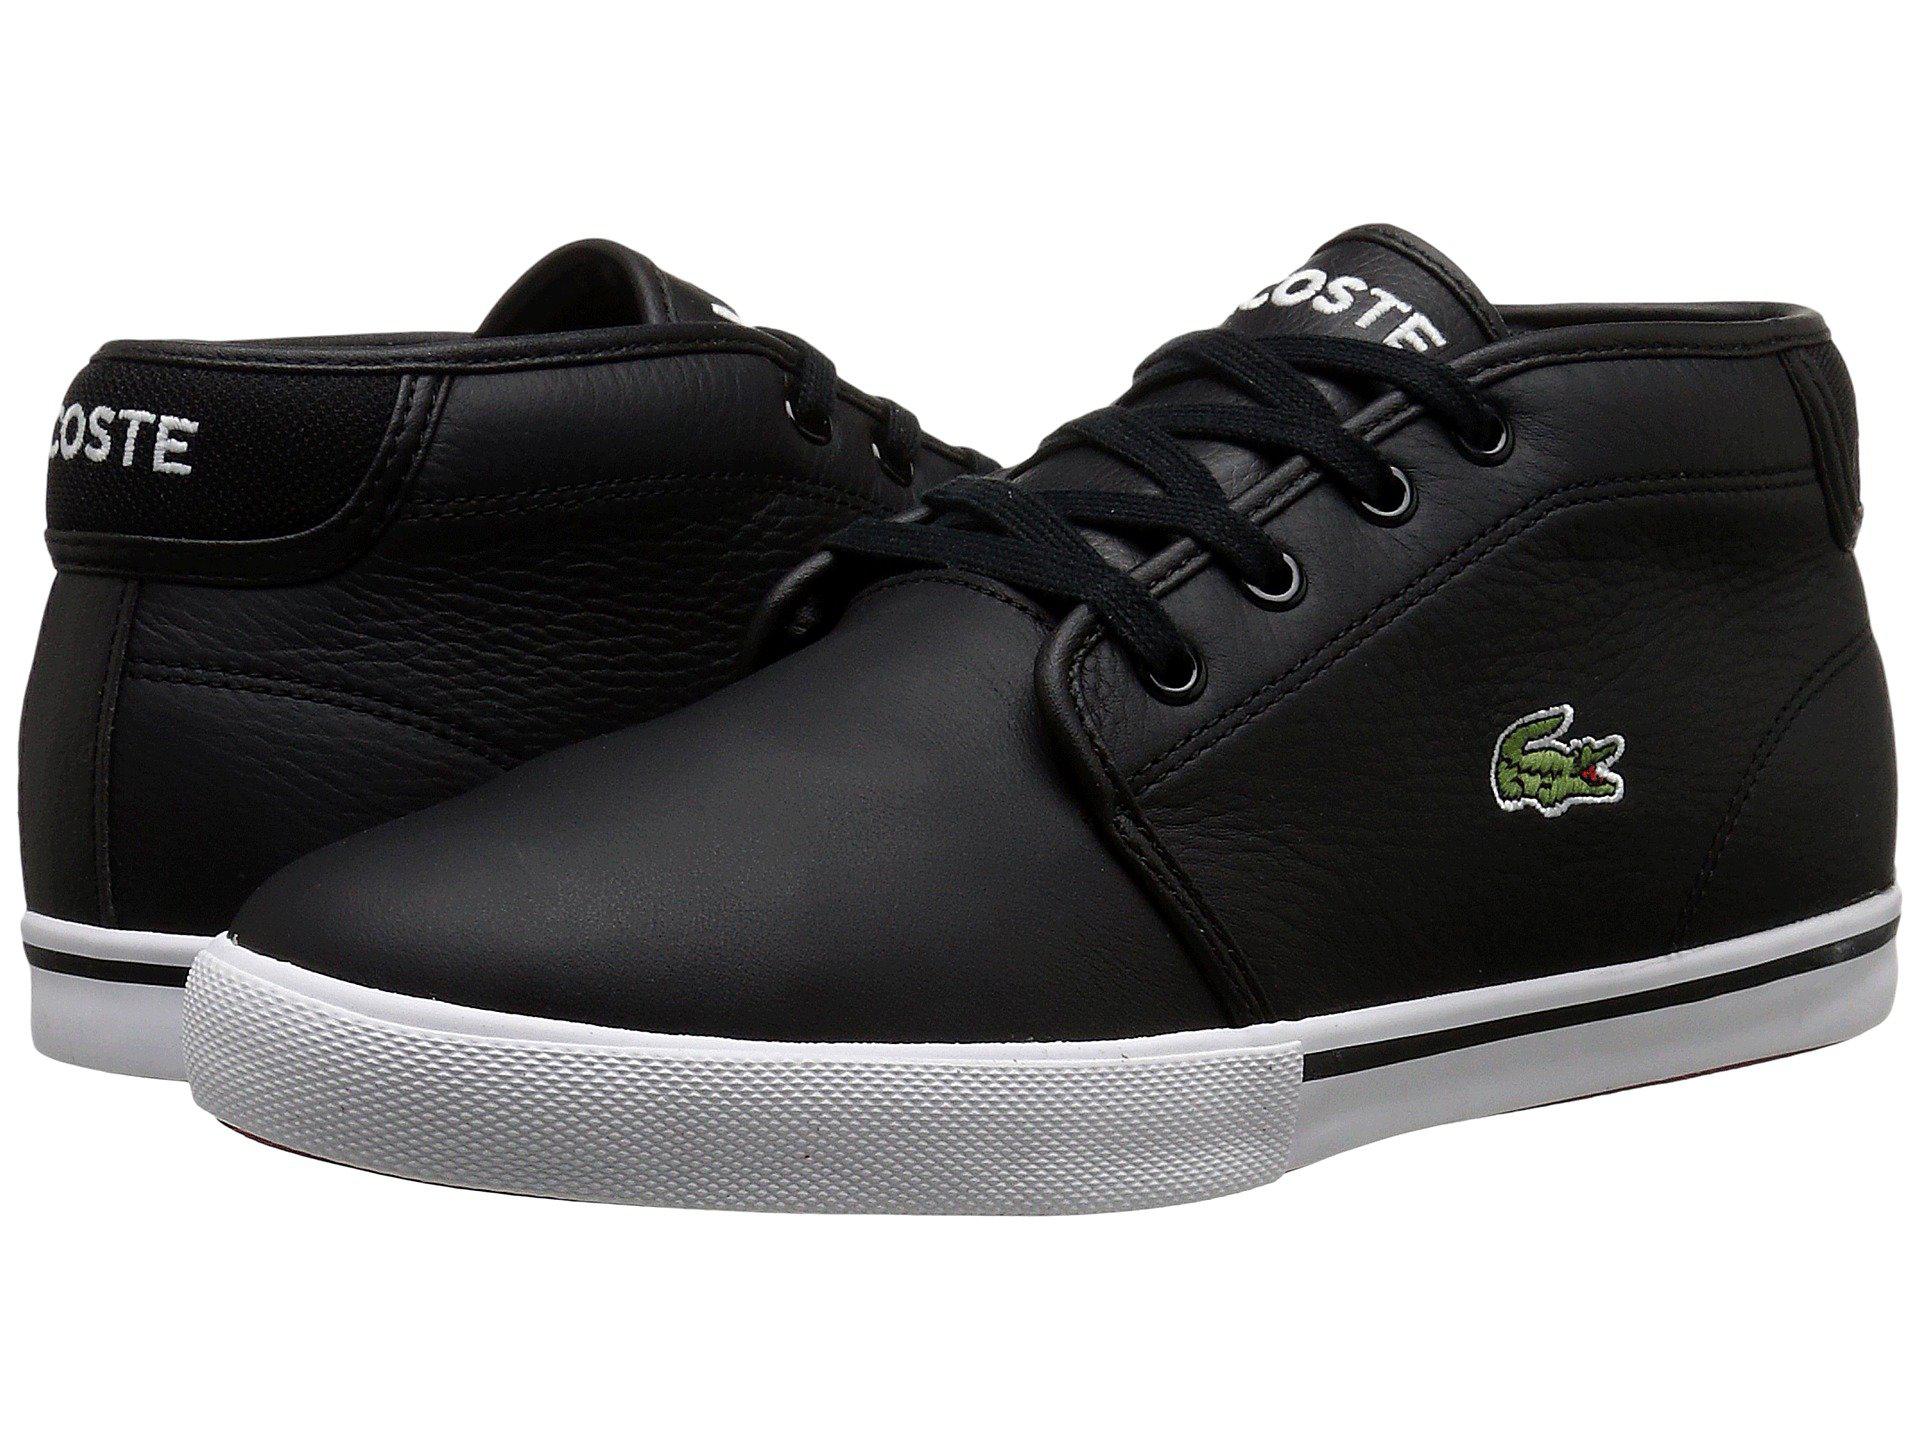 Lyst - Lacoste Ampthill Lcr3 (black/black) Men's Shoes in Black for Men